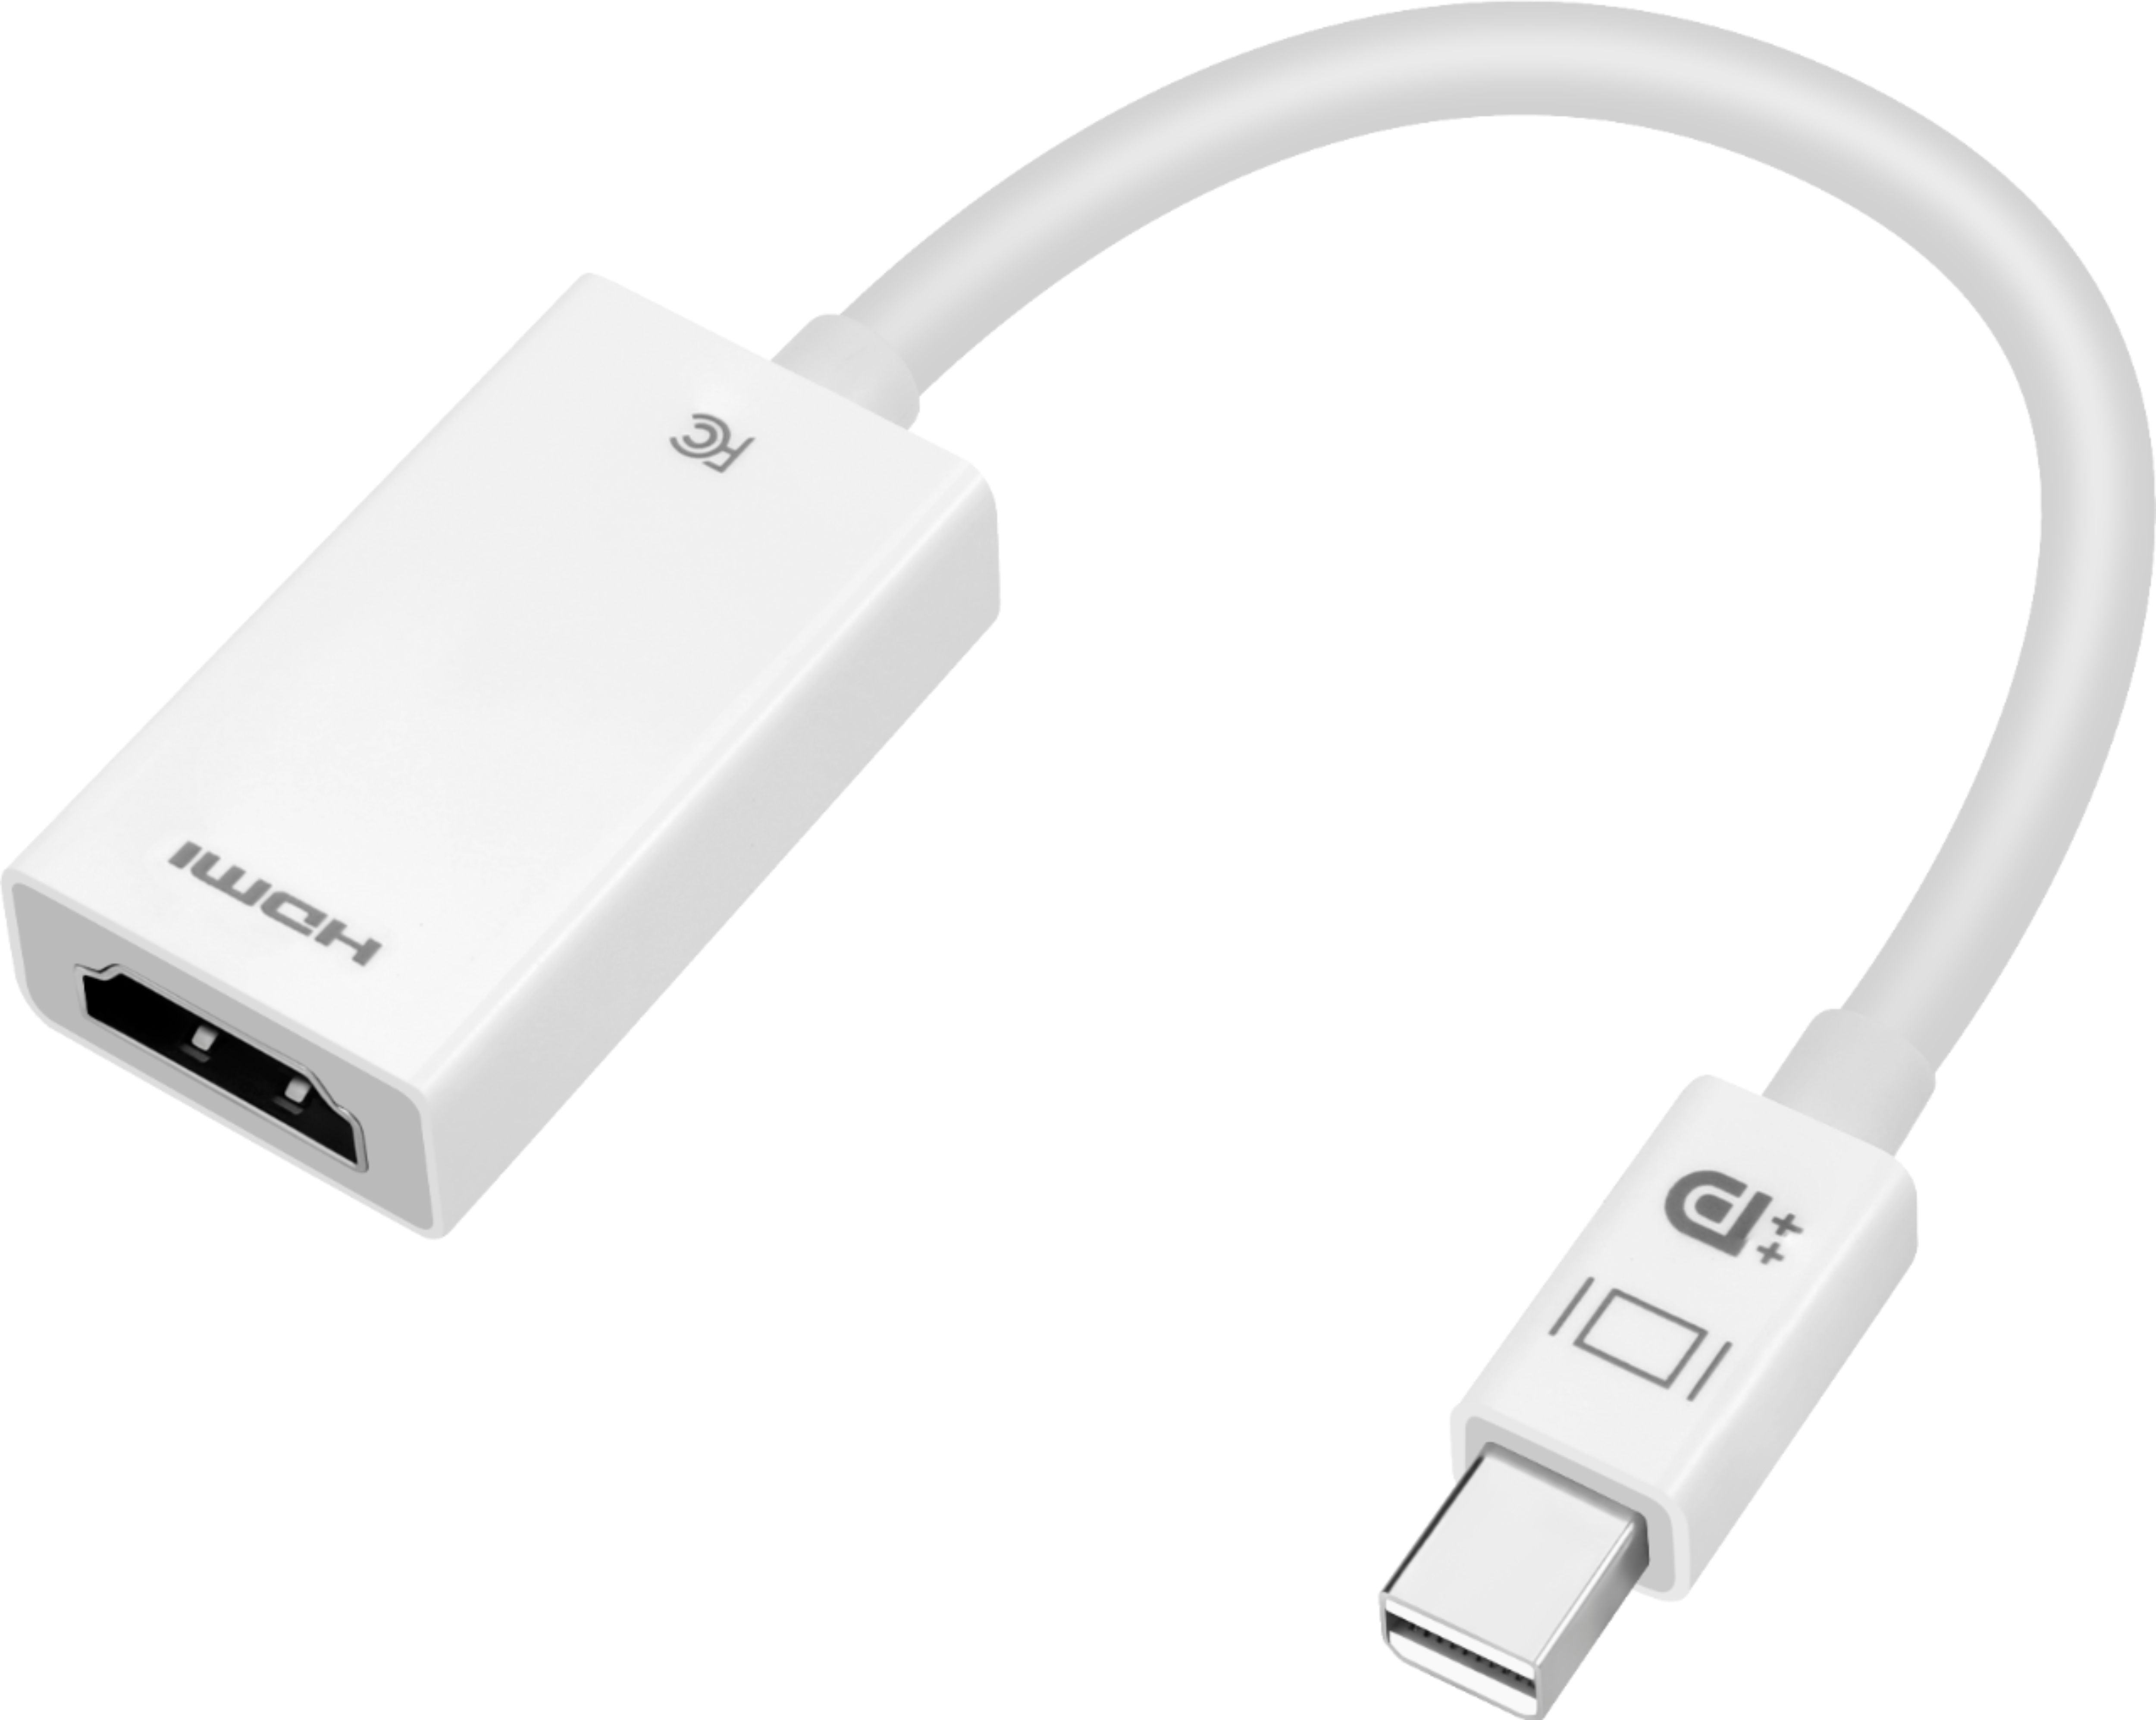 Voorzichtigheid Observatorium Umeki Best Buy essentials™ Mini DisplayPort to HDMI Adapter White BE-PAMDHD -  Best Buy